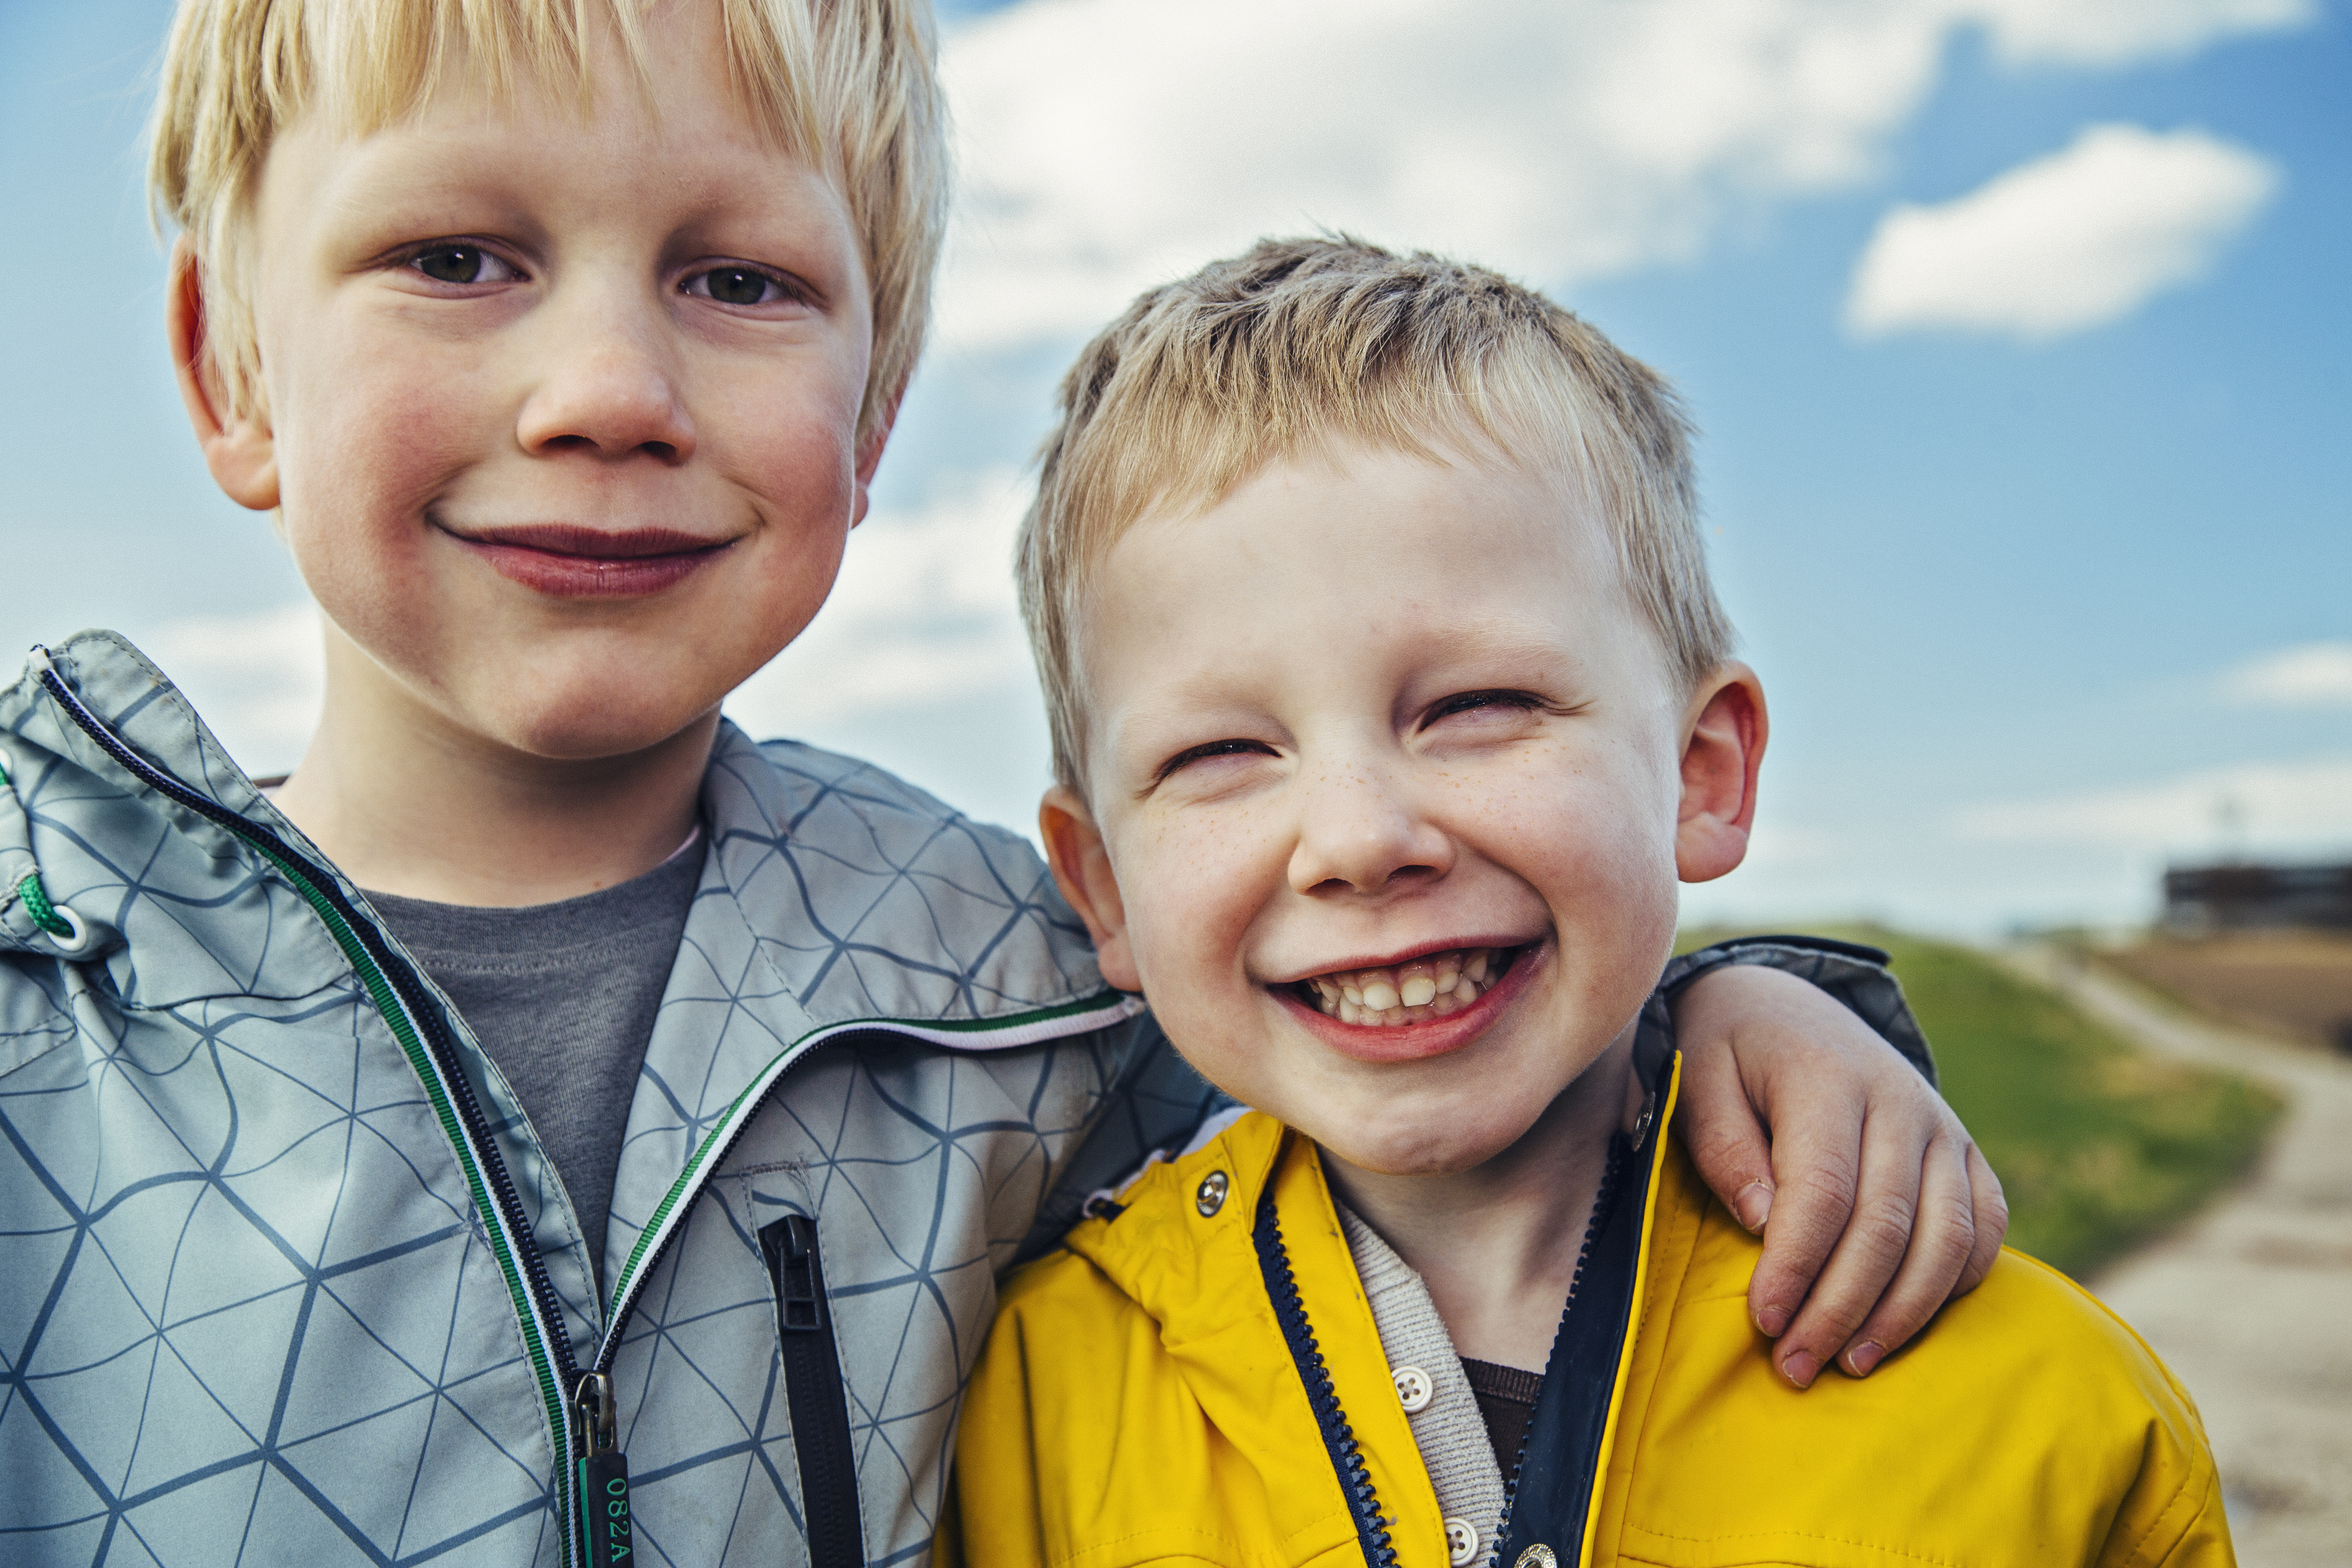 Zwei kleine Jungen lächeln | Quelle: Getty Images